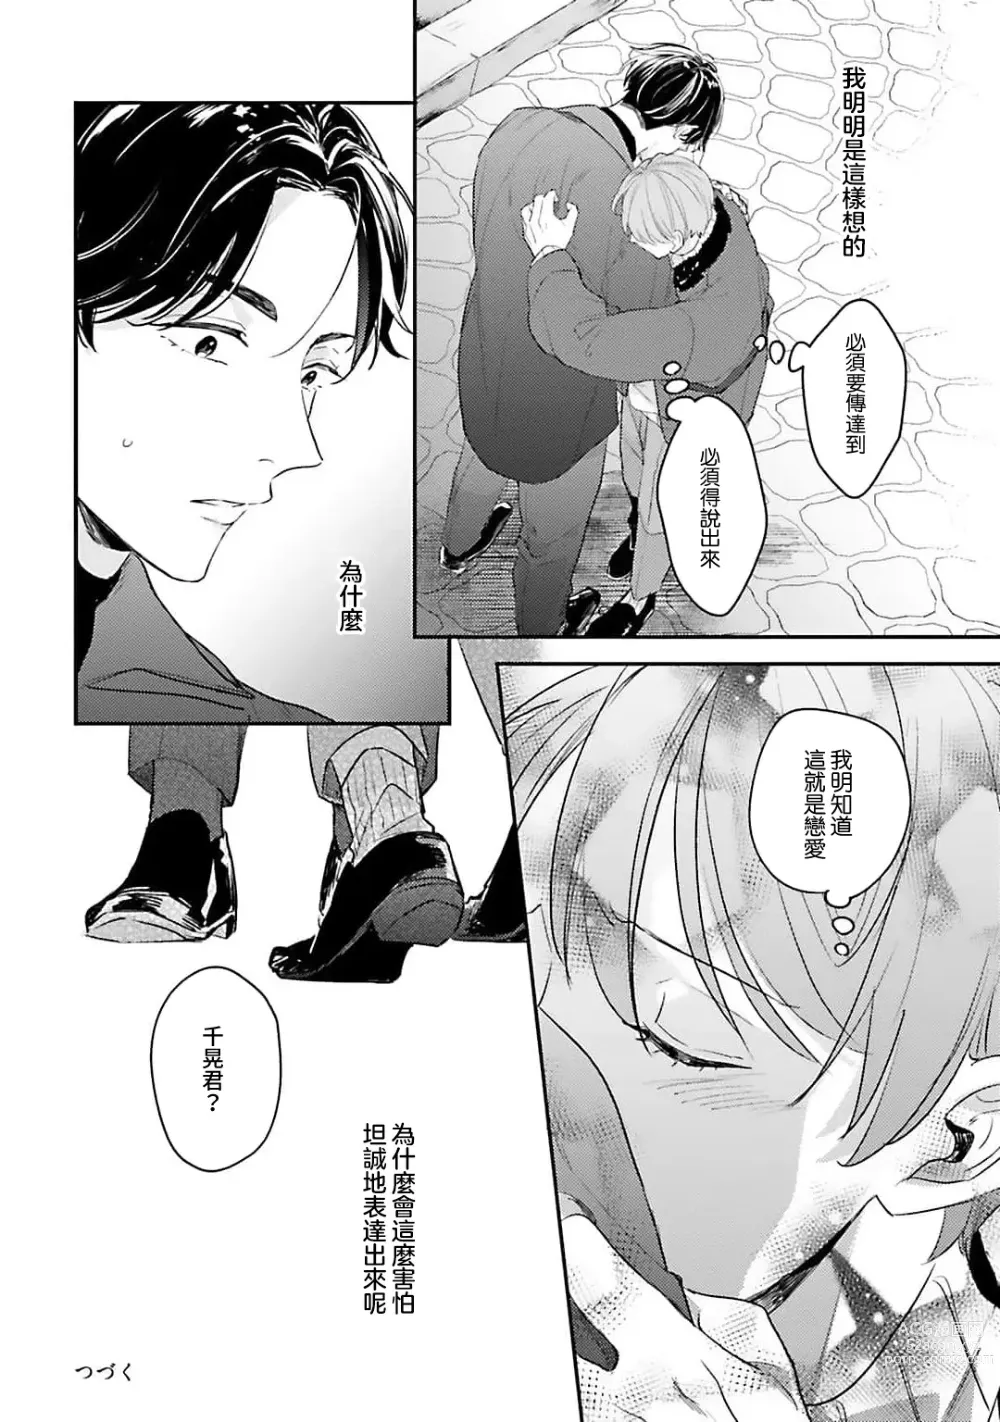 Page 117 of manga 绽放的恋爱皆为醉与甜1